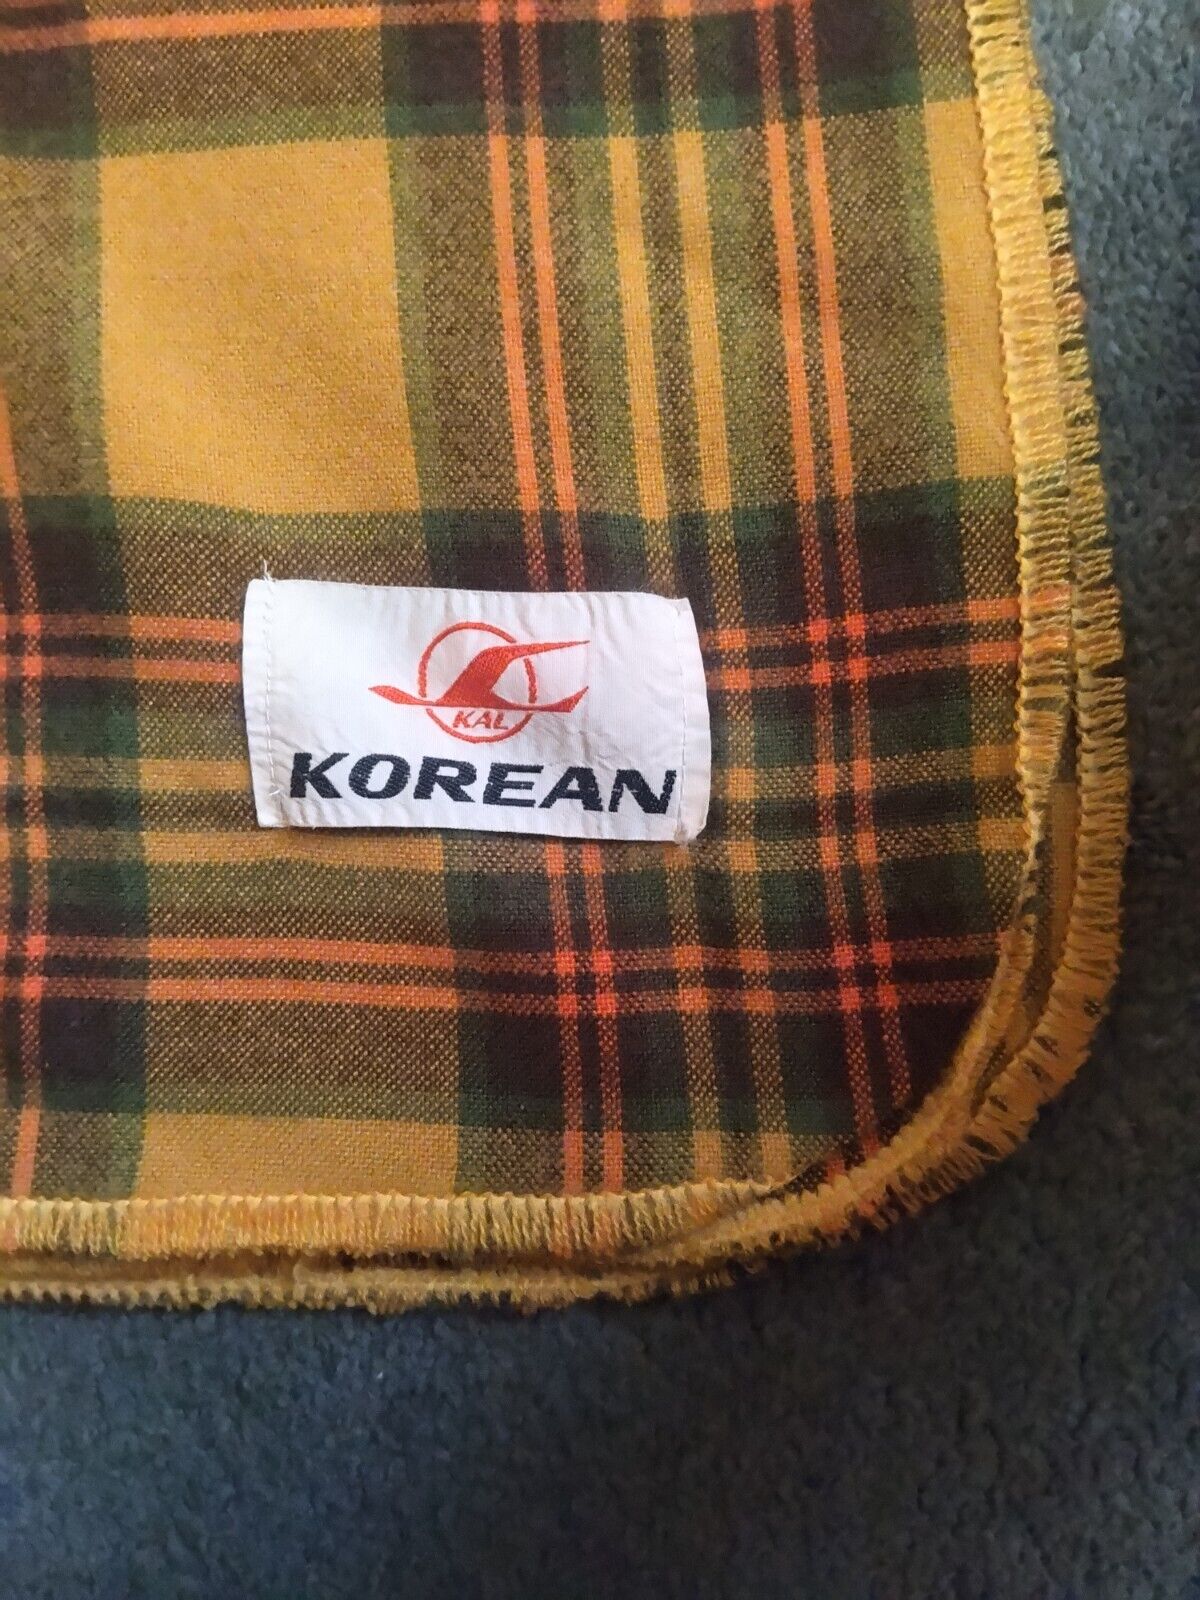 Korean Airlines Plaid Lap Blanket Tan Green Red Travel Throw 54inx44in unused...